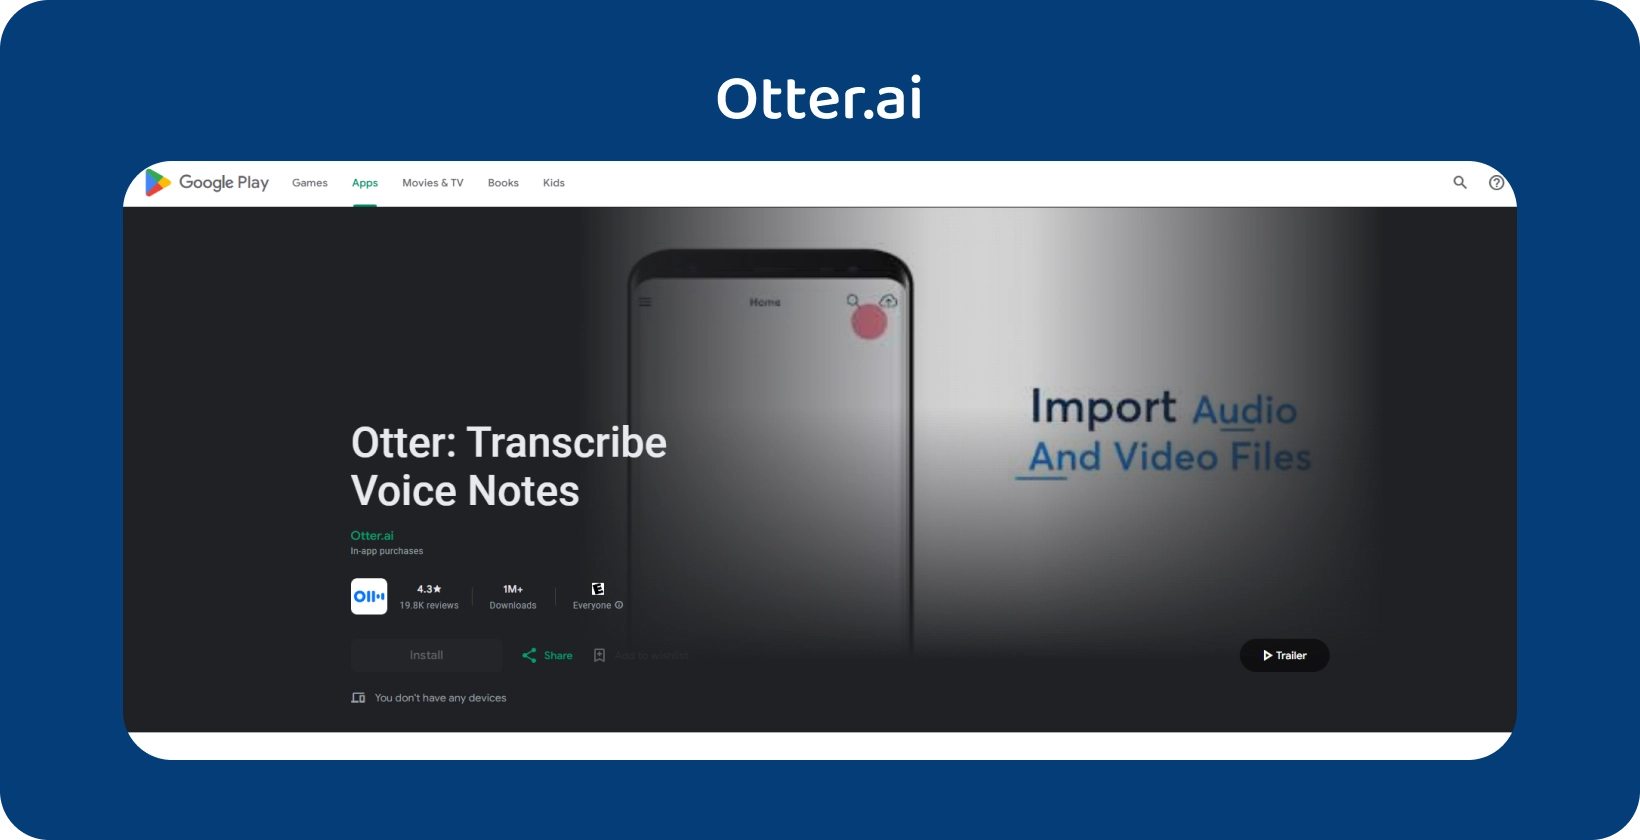 Otter.ai εφαρμογή στο Google Play, με δυνατότητες μεταγραφής φωνητικών σημειώσεων και εισαγωγής αρχείων ήχου/βίντεο.